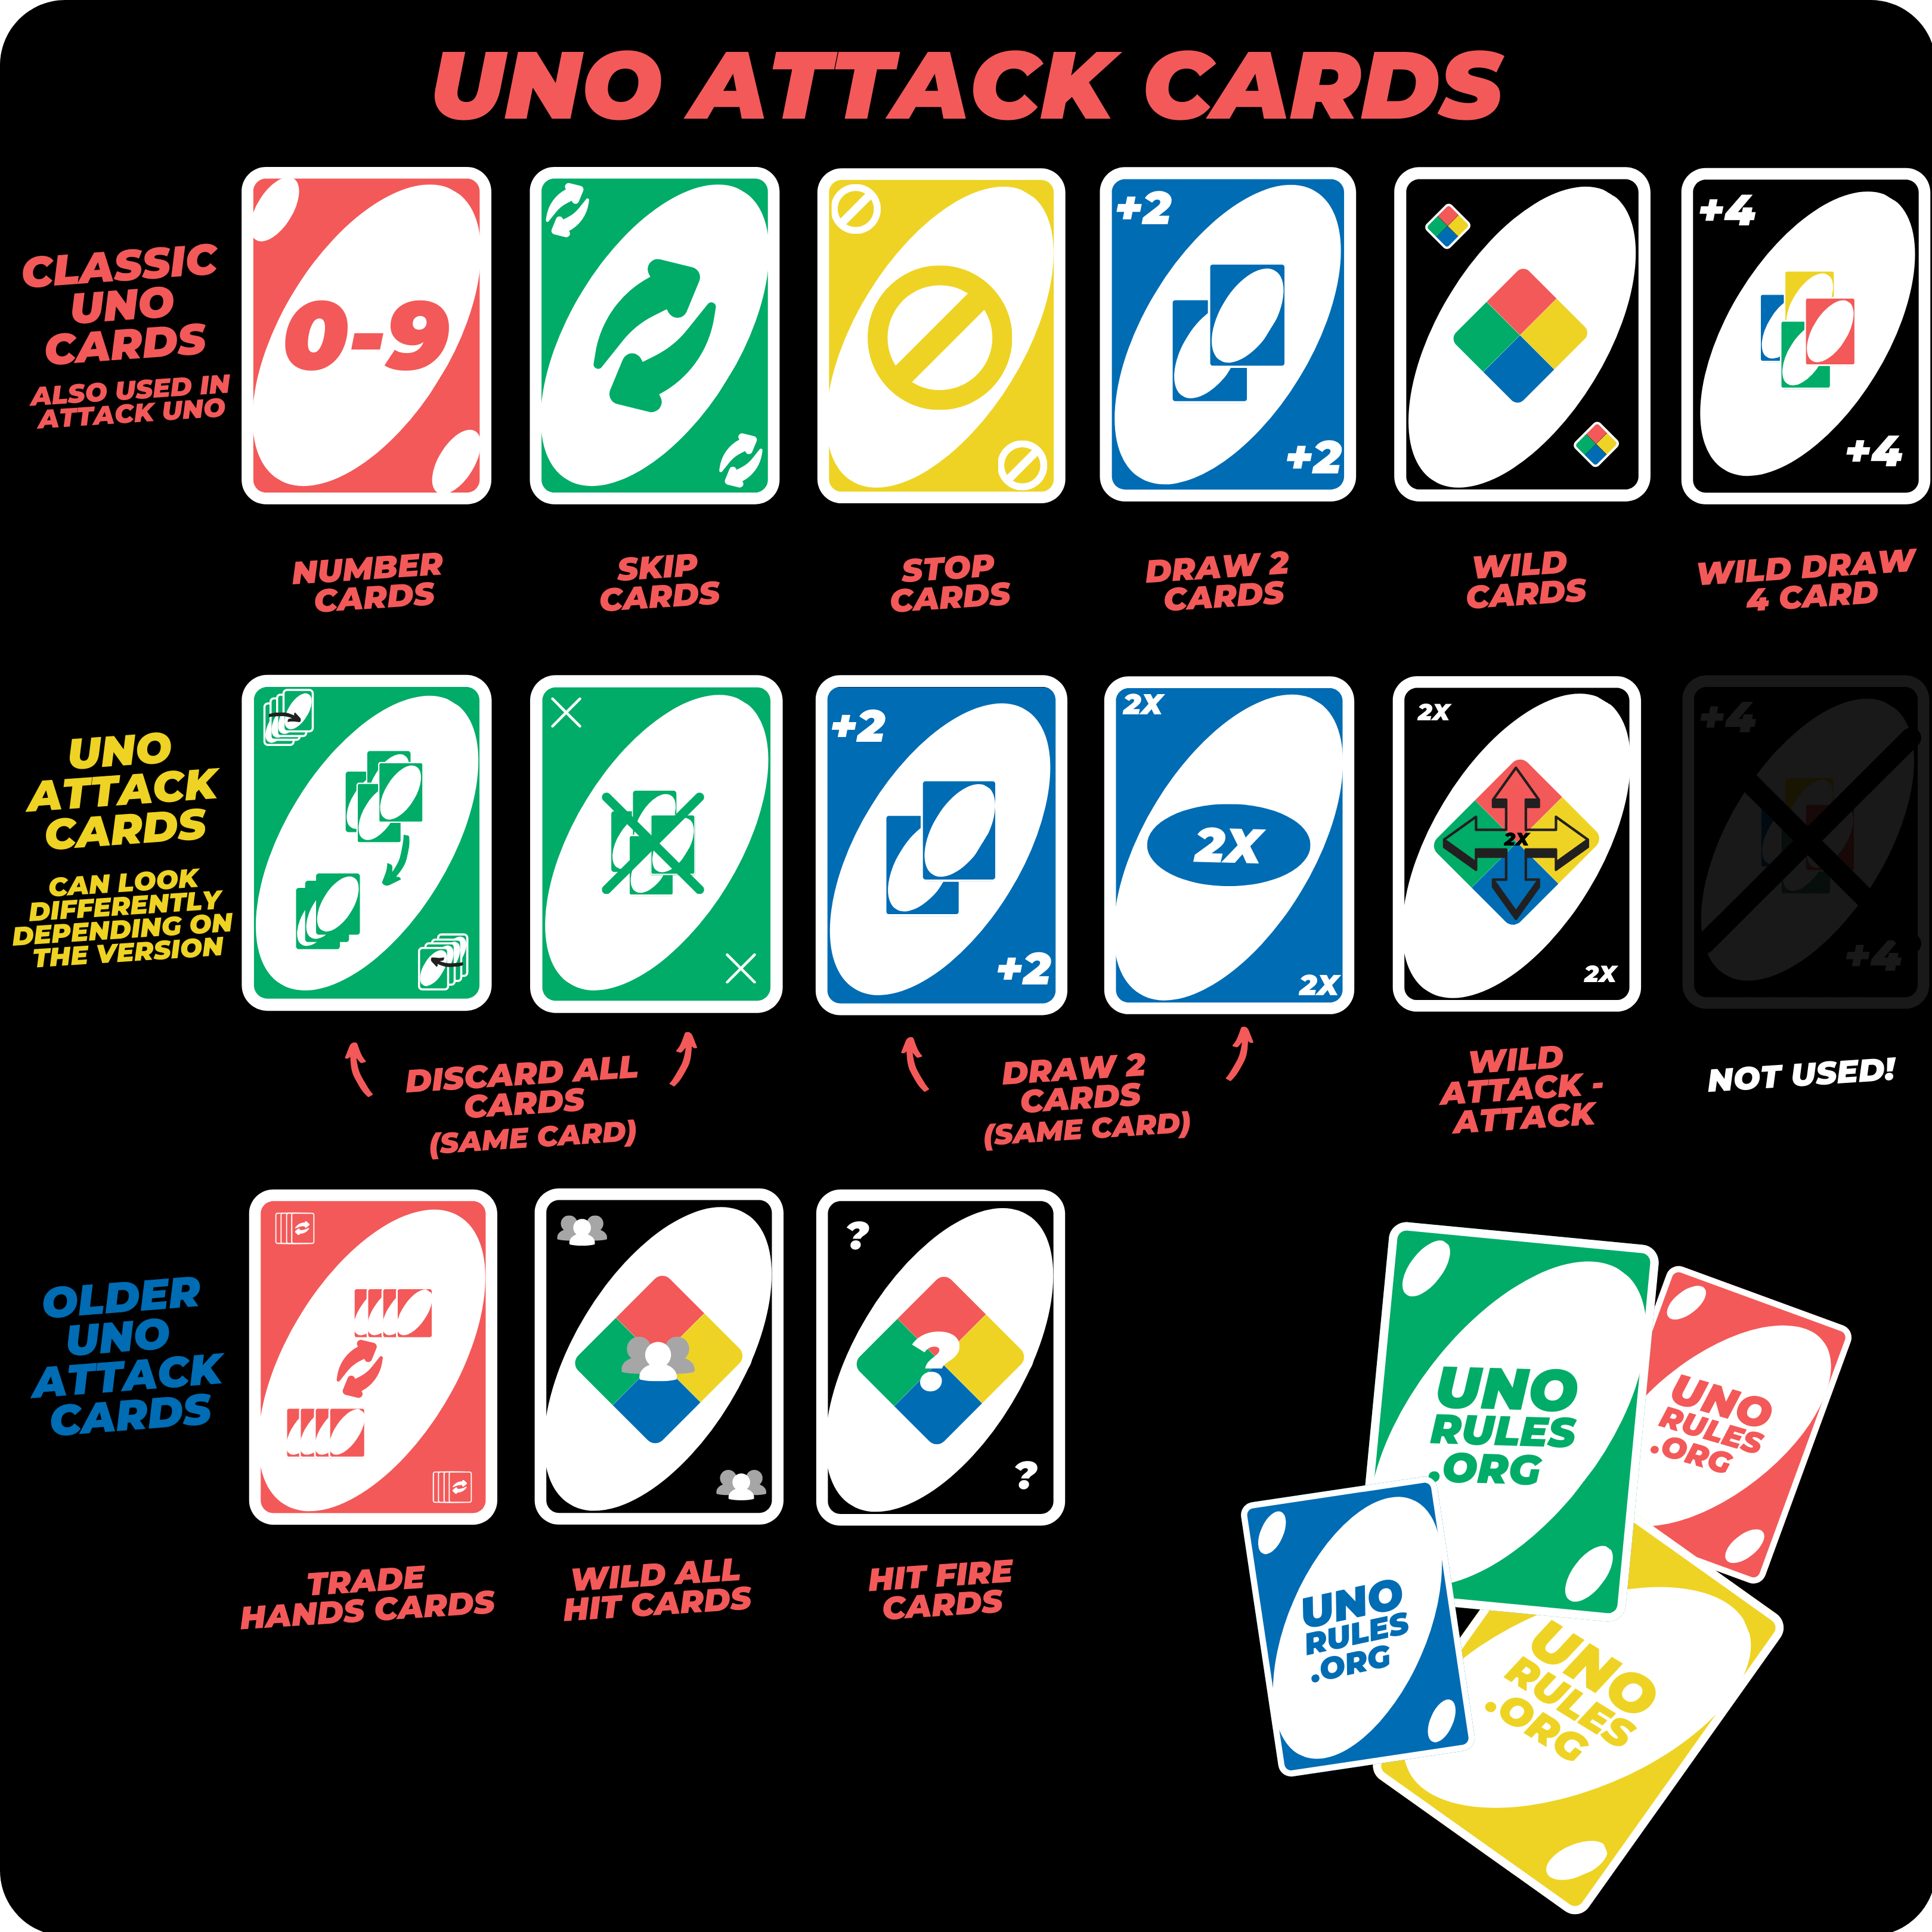 Uno All Wild Rules - Uno Rules